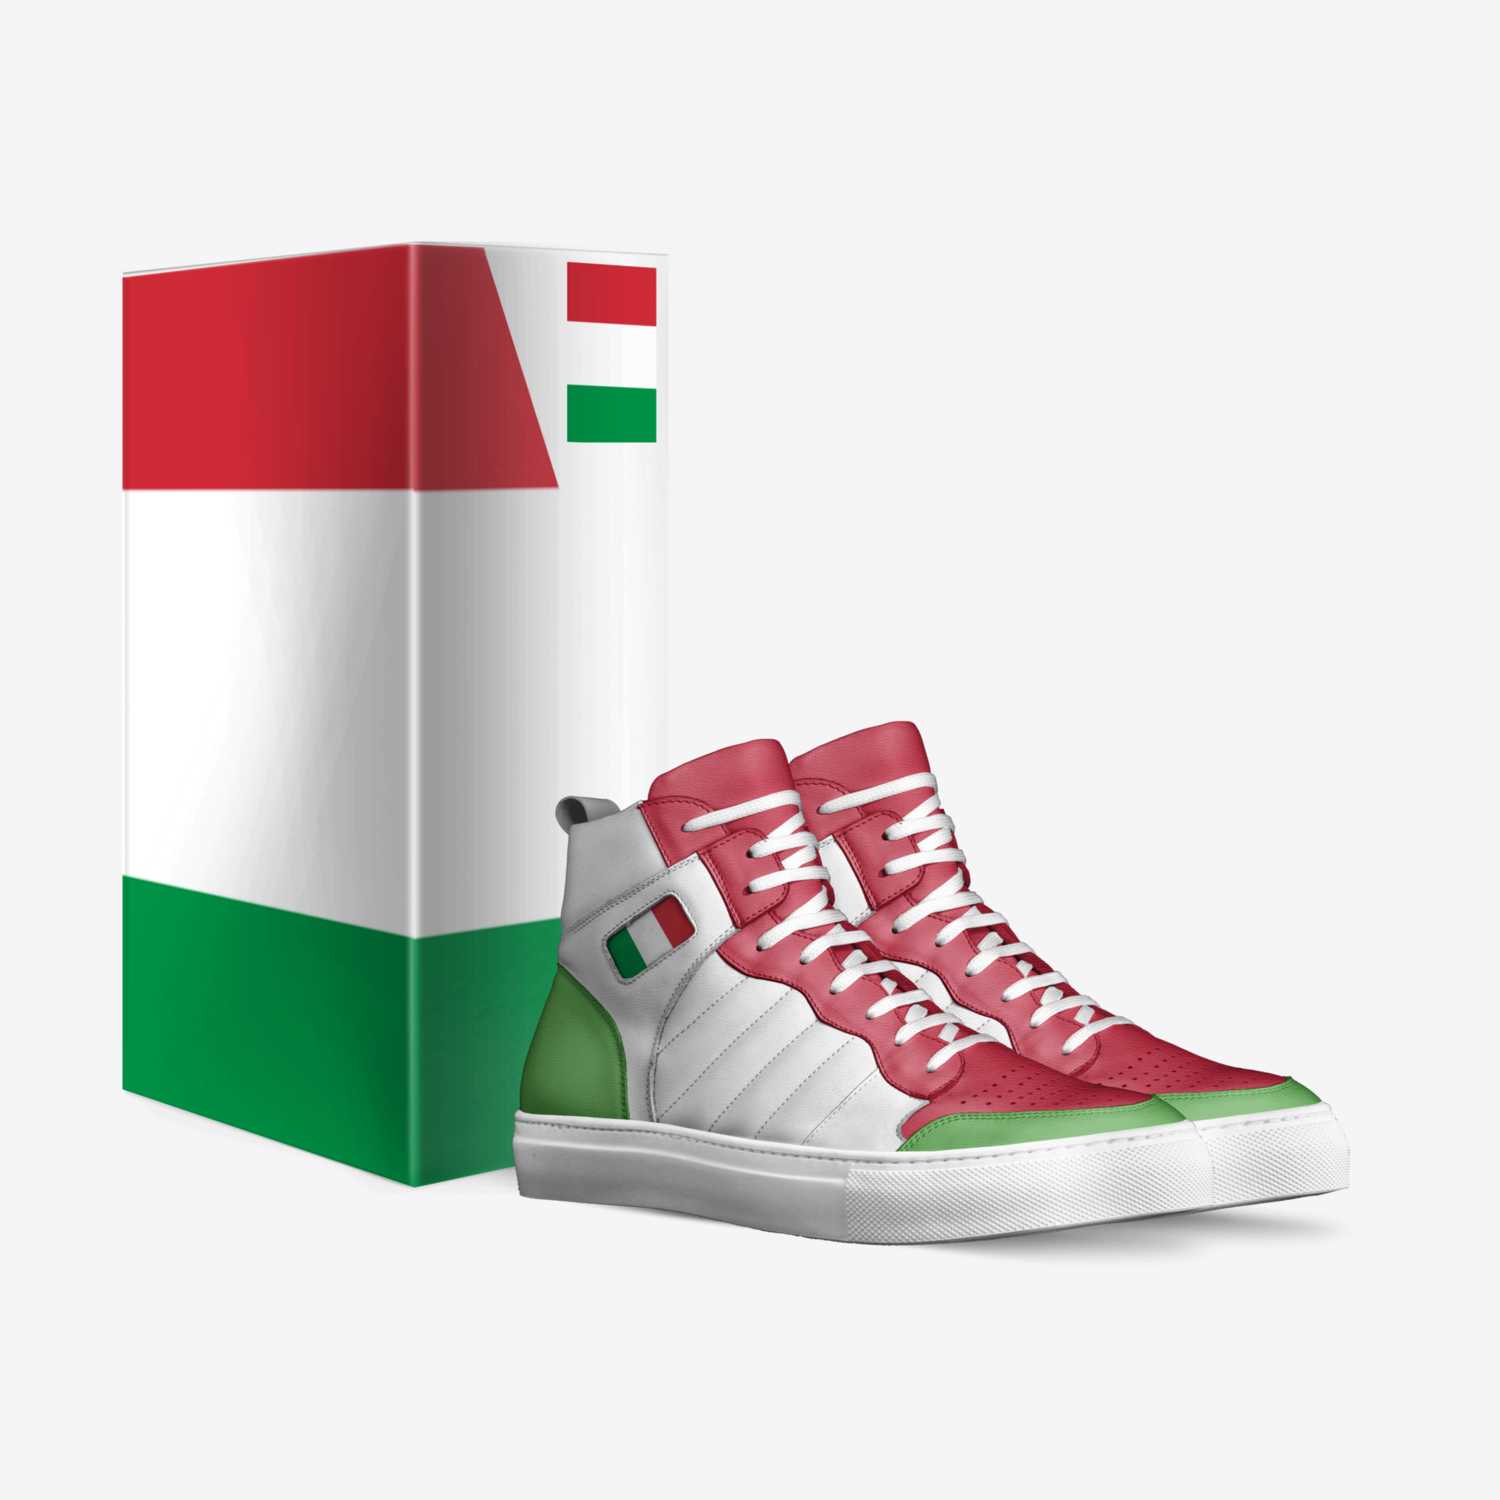 Rivoluzione custom made in Italy shoes by Sergio Maldonado | Box view